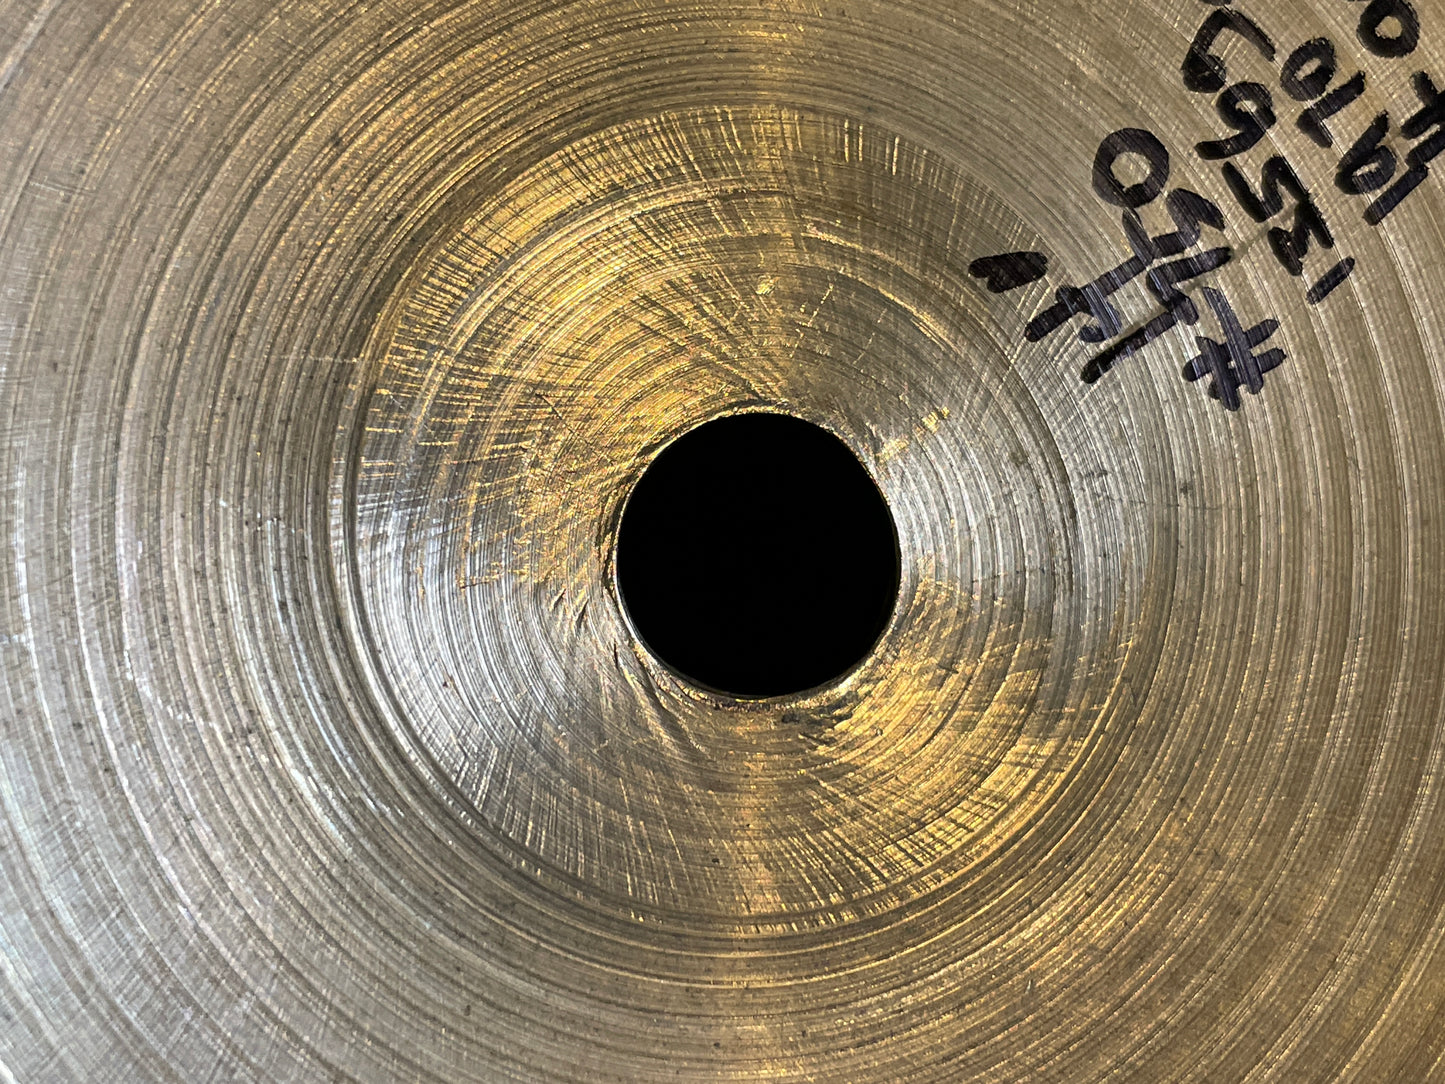 14" Zildjian A 1970s Hi-Hat Cymbal Single 1356g #750